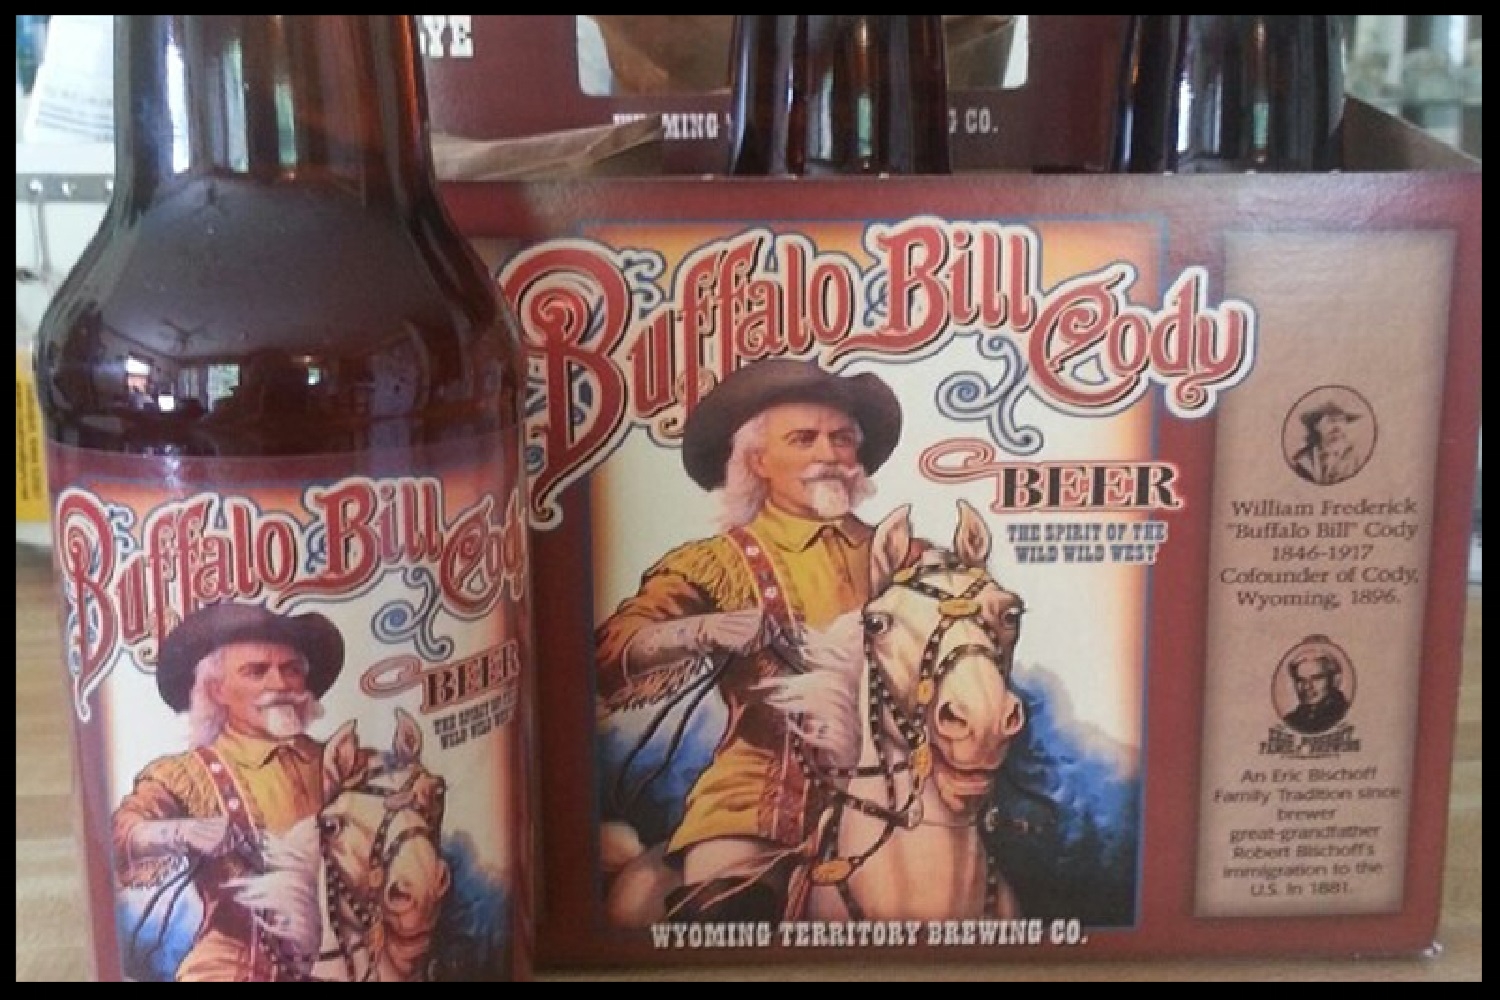 Buffalo Bill Cody Beer (Cody, WY)